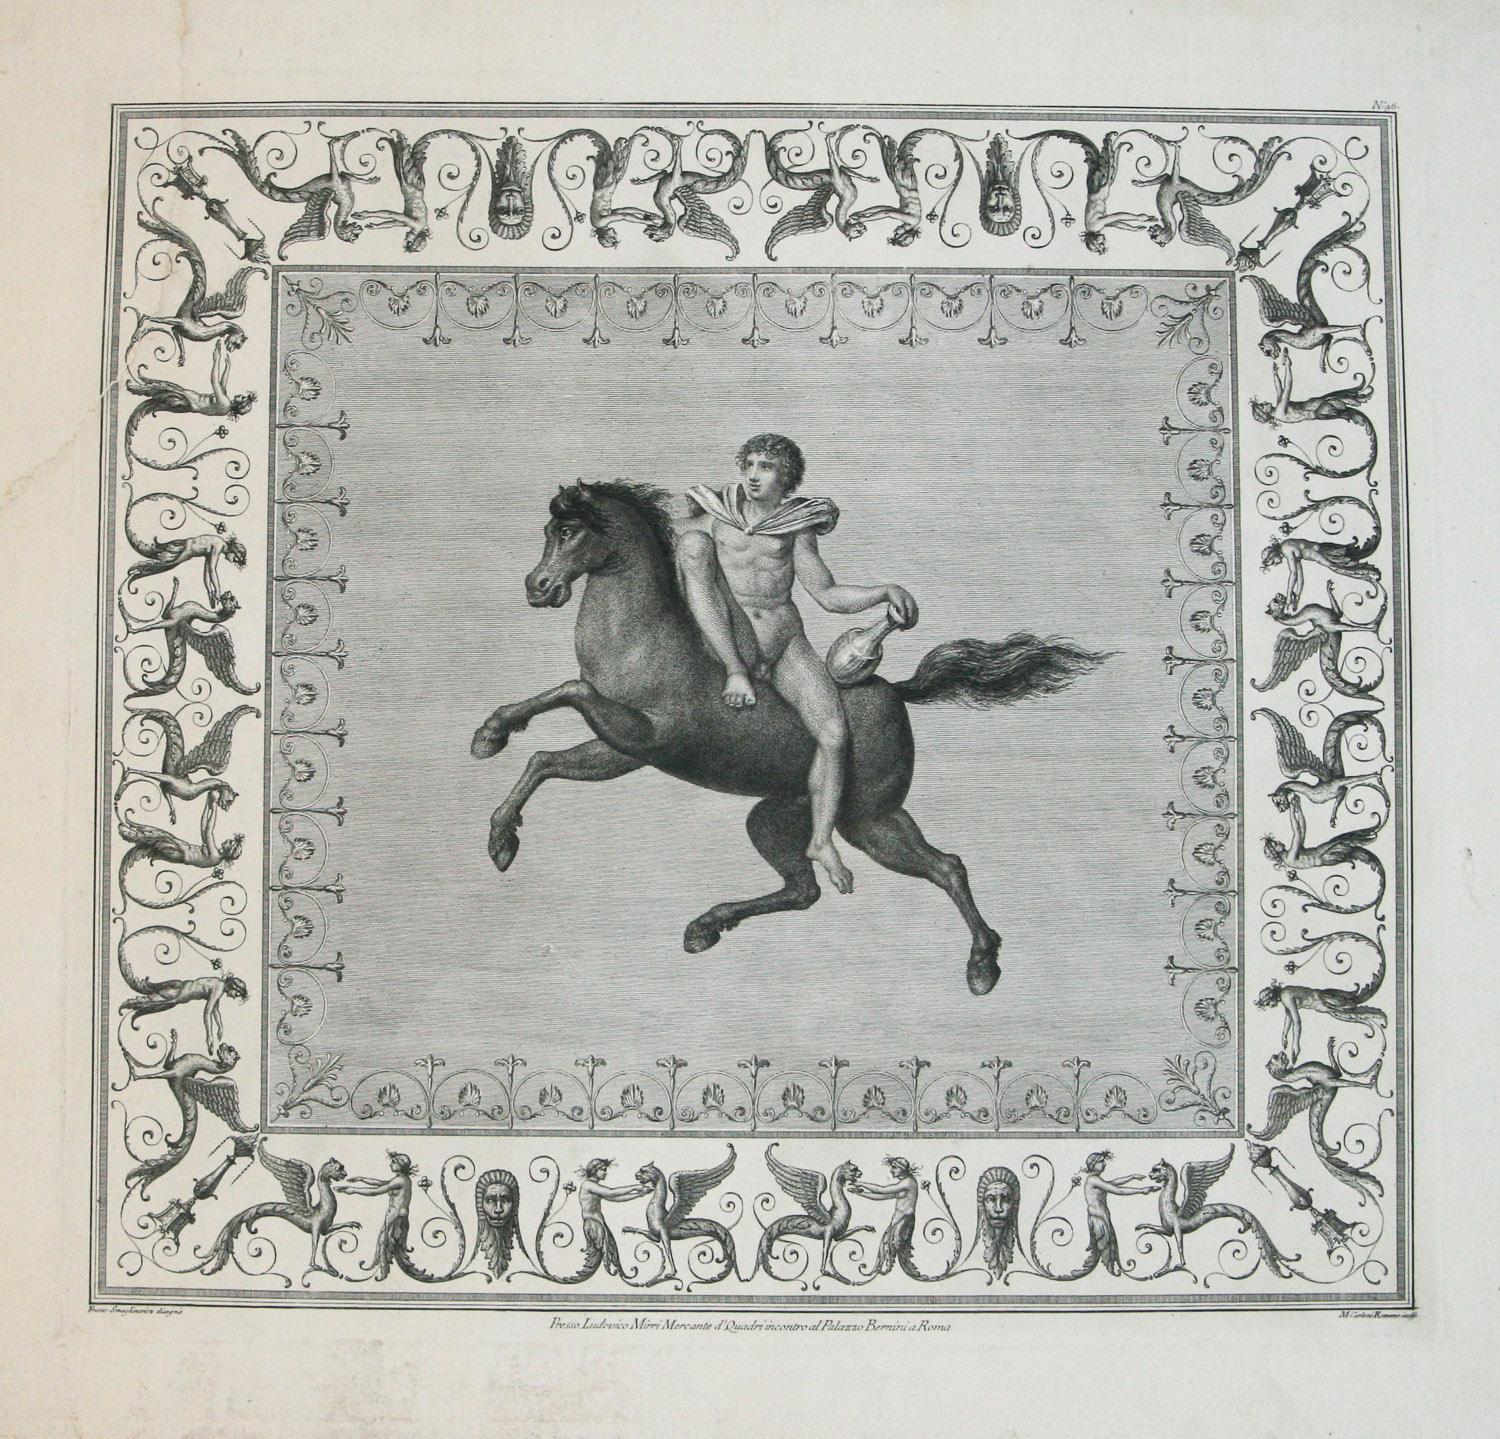 Marco Carloni Animal Print – Presse Ludovico Mirri Mercante d'Quadri incontro al Palazzo Bernini a Roma No.46